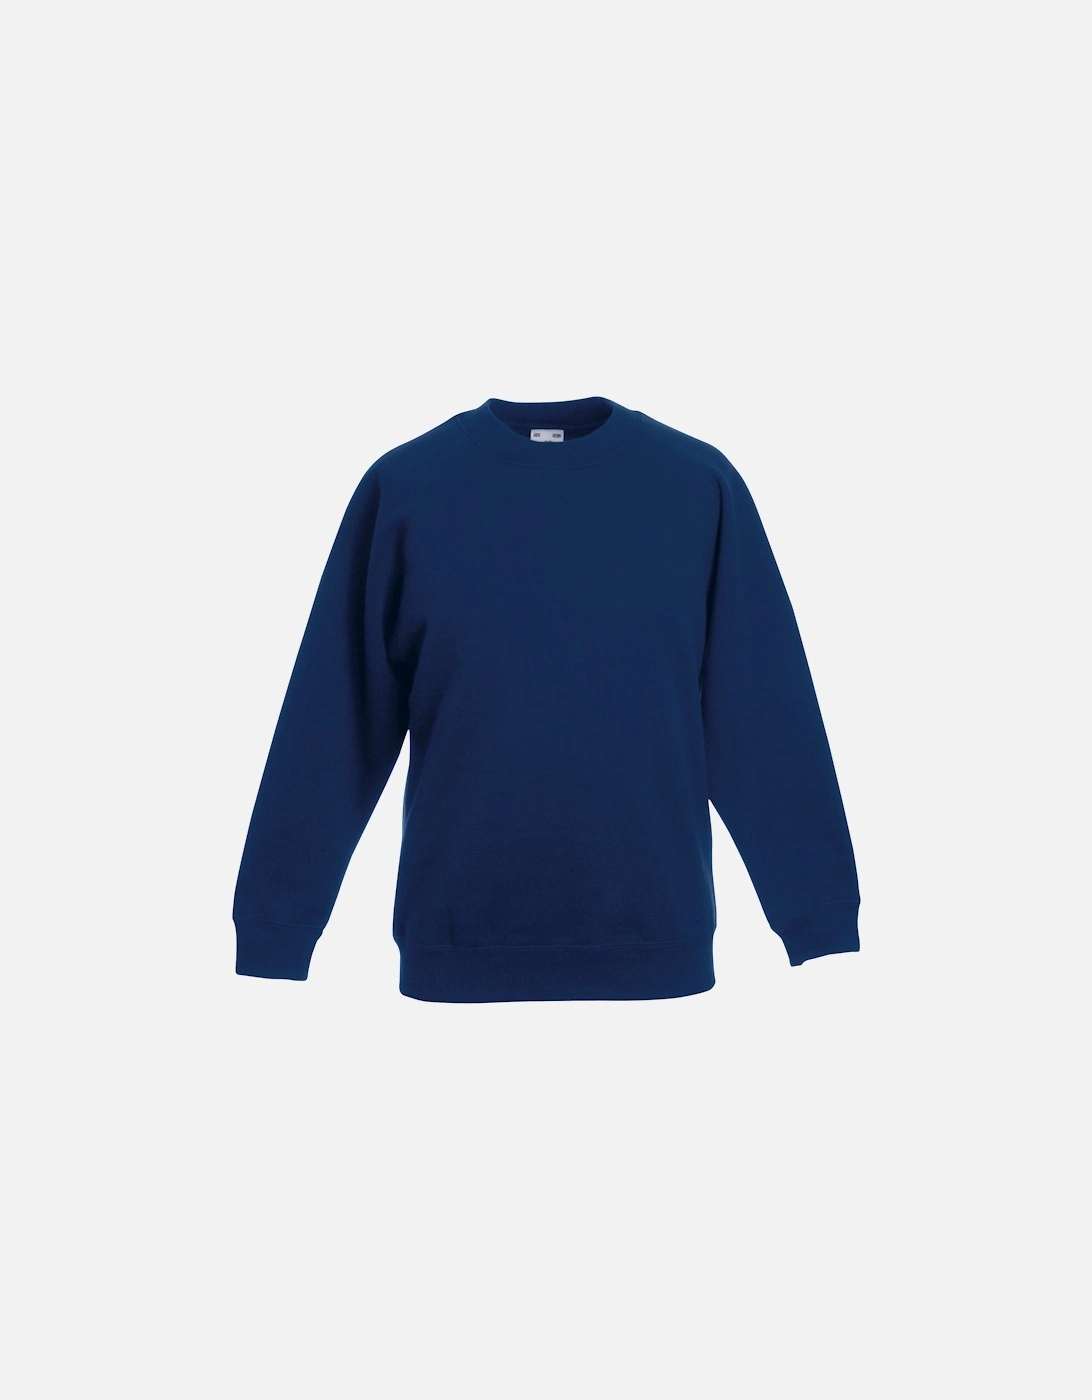 Childrens Unisex Raglan Sleeve Sweatshirt (Pack of 2), 3 of 2